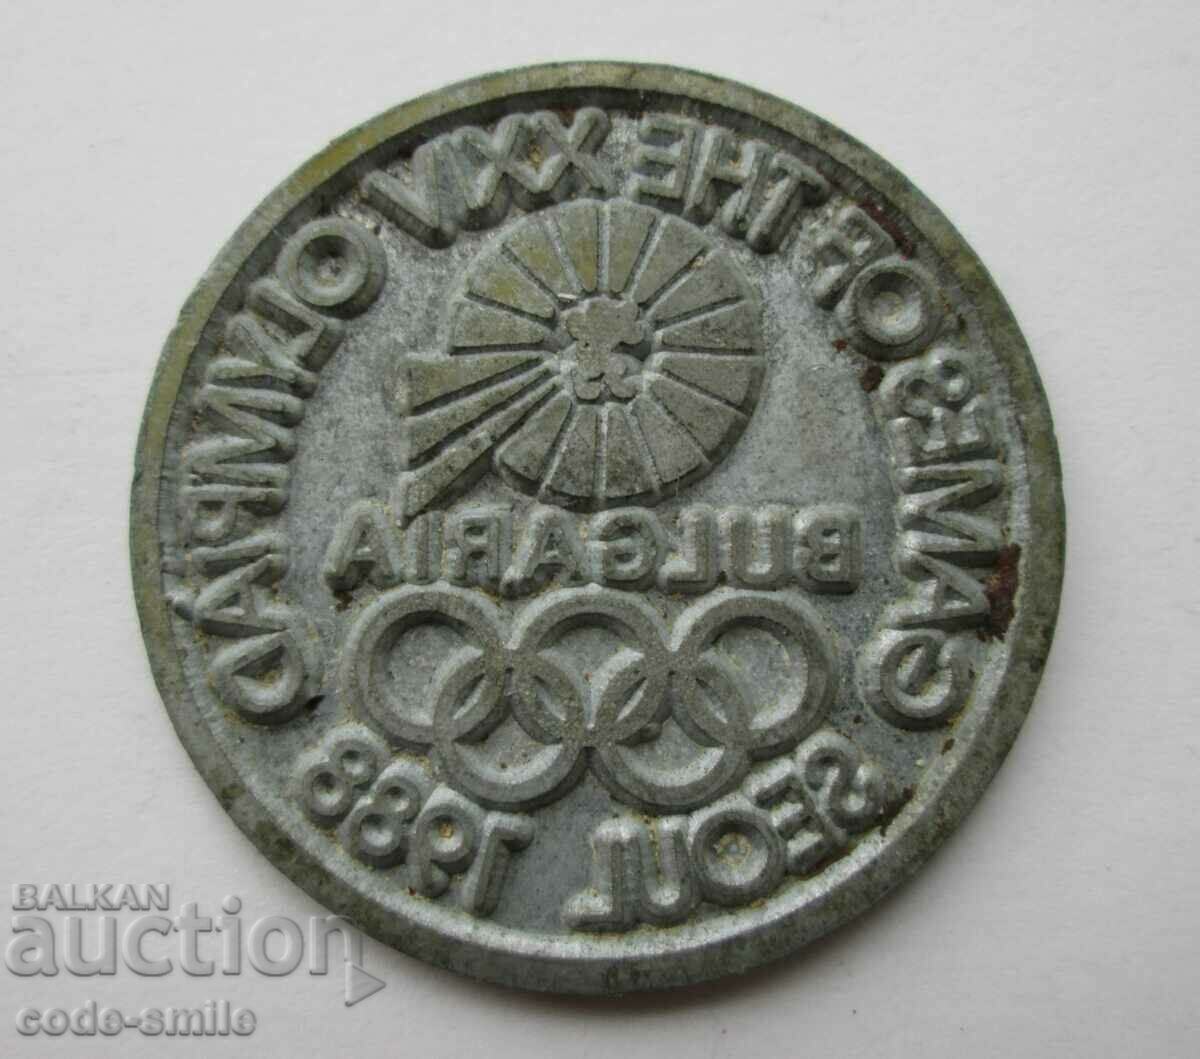 Παλιό γραμματόσημο από την Ολυμπιάδα NRB για τους Ολυμπιακούς Αγώνες της Σεούλ 1988